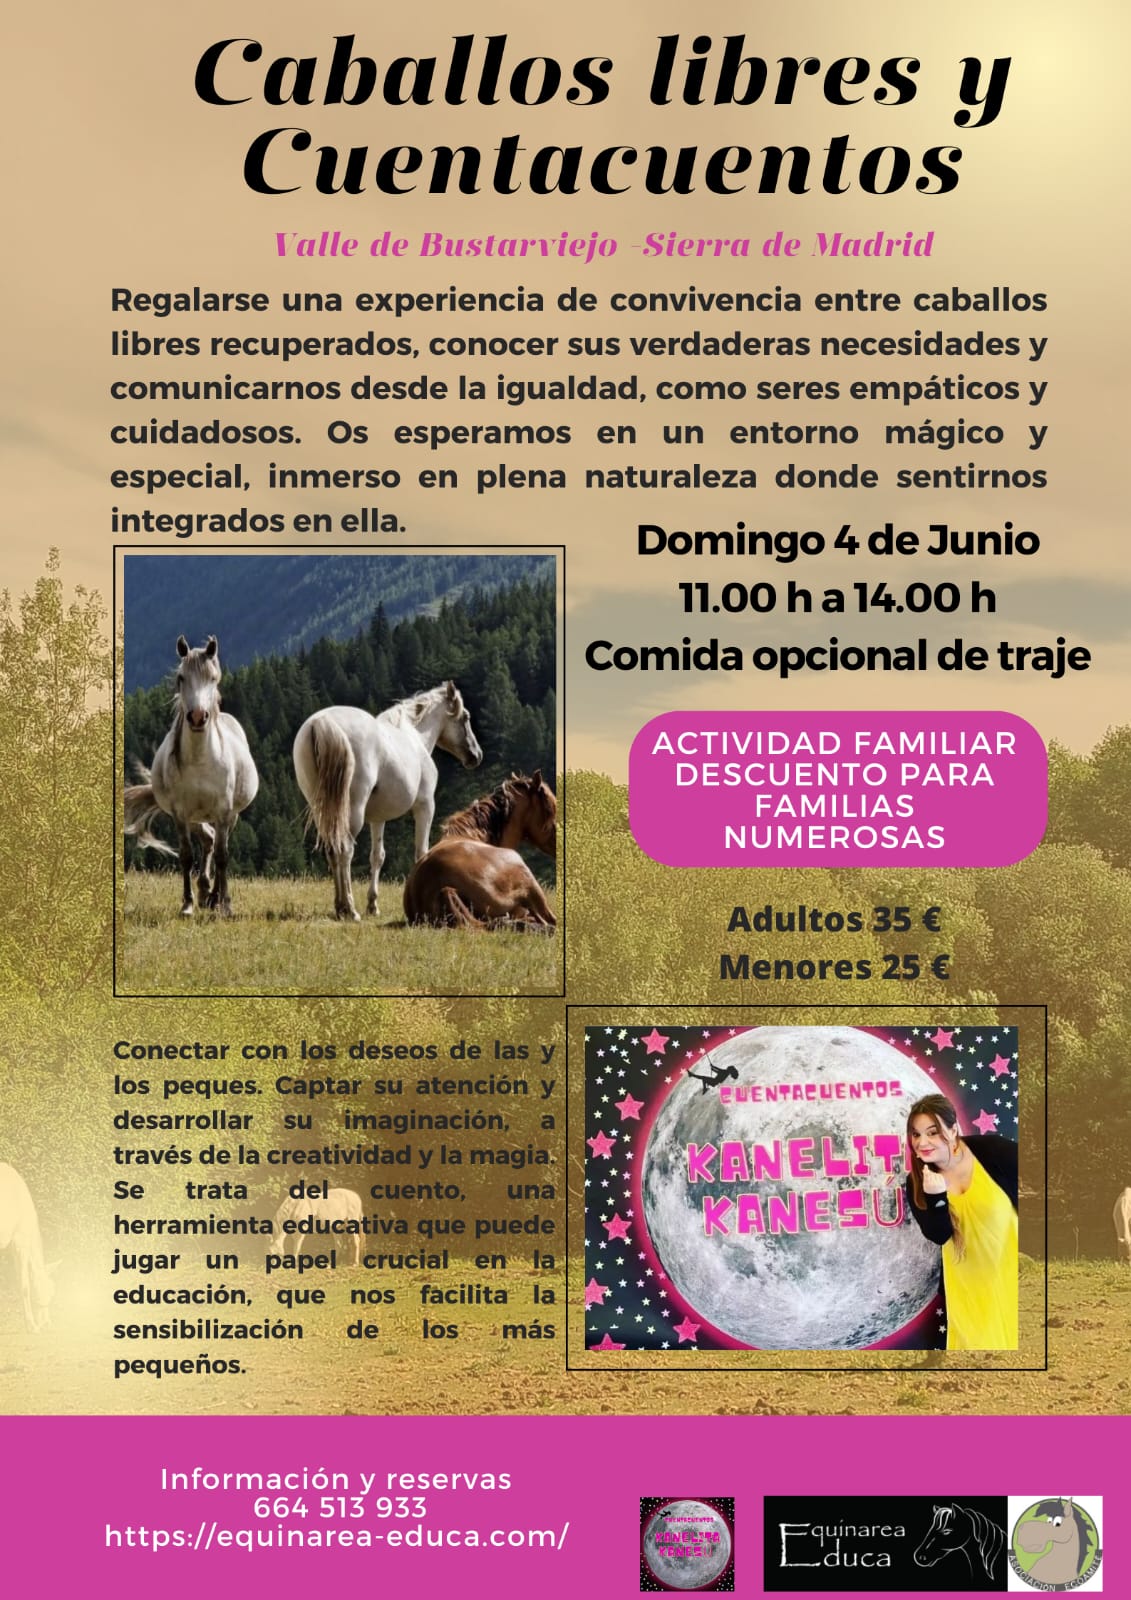 Caballos libres y Cuentacuentos - Valle de Bustarviejo, Madrid - Domingo 4 de Junio 2023